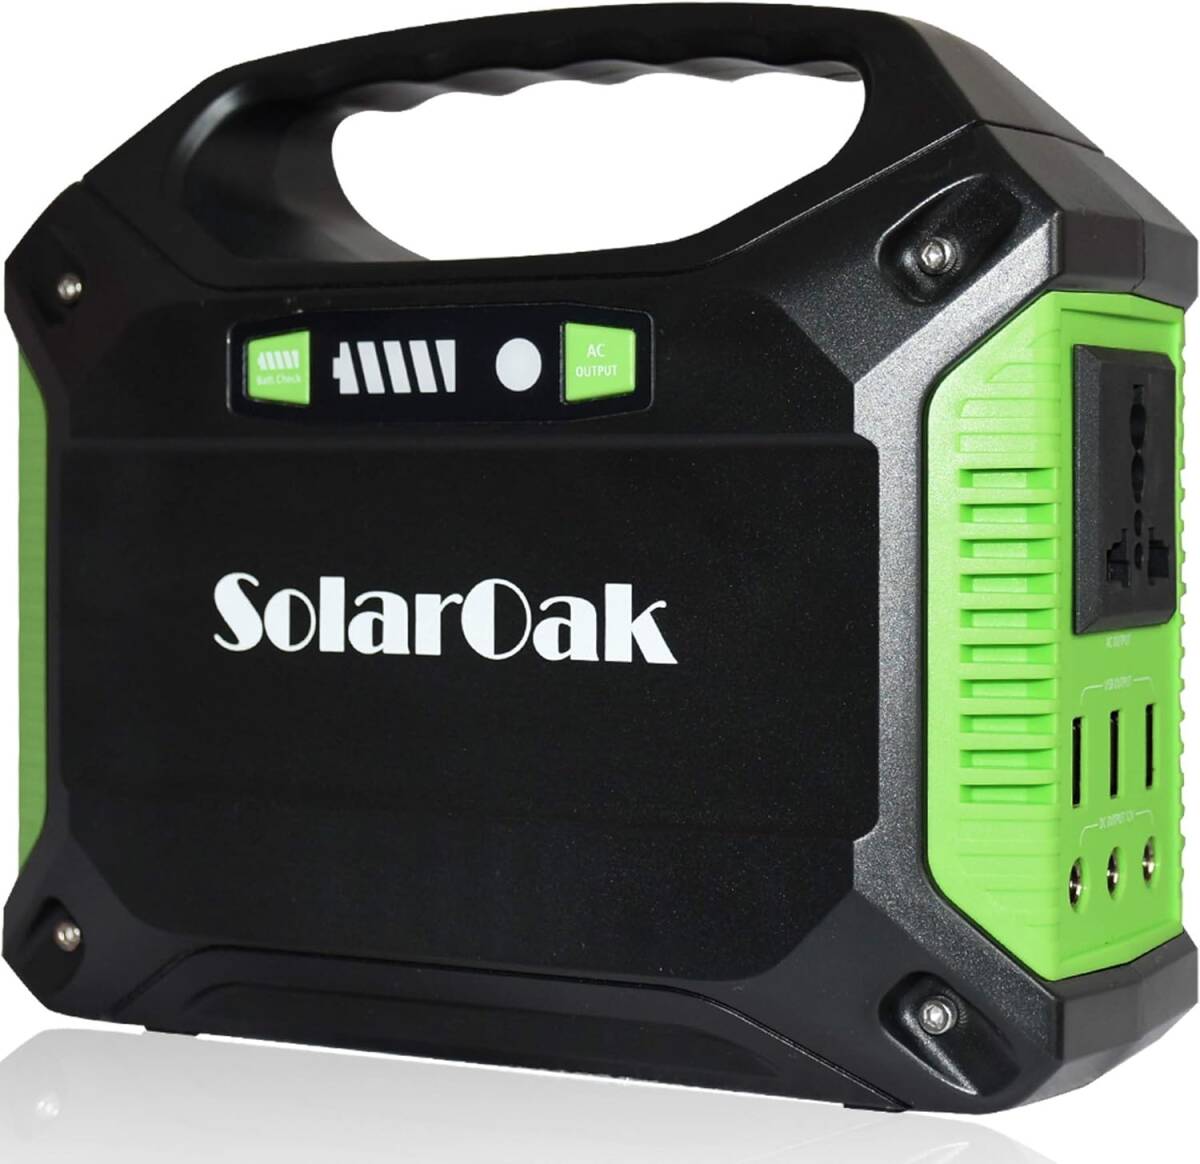 ポータブル電源 SolarOak PSE認証済 42000mAh/155Wh AC/DC/USB出力 アウトドア キャンプ 停電 防災グッズ 非常用電源_画像1